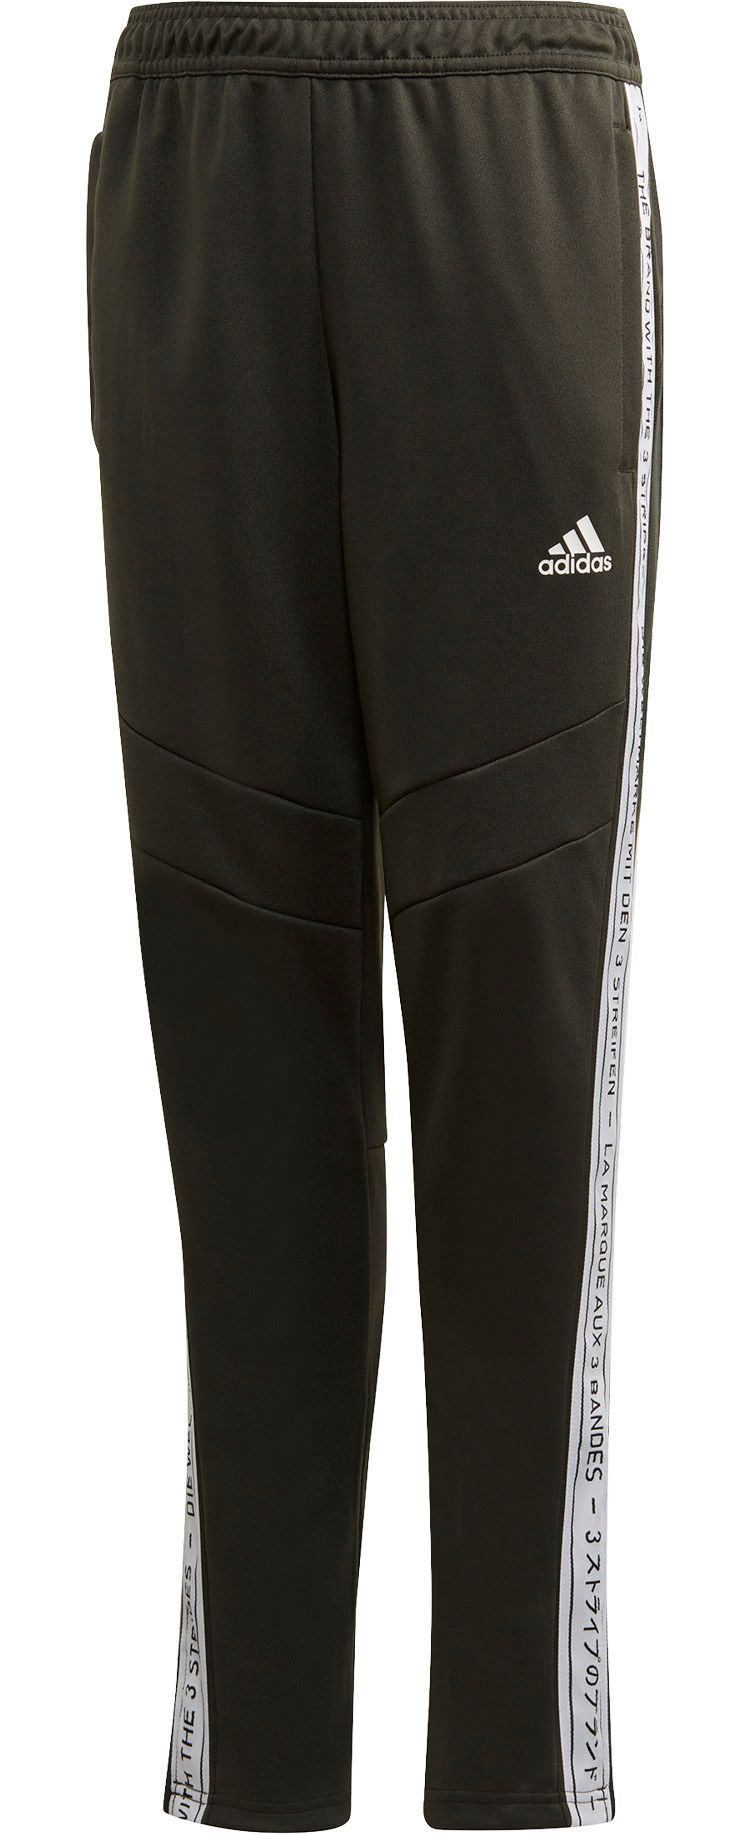 adidas soccer pants and jacket